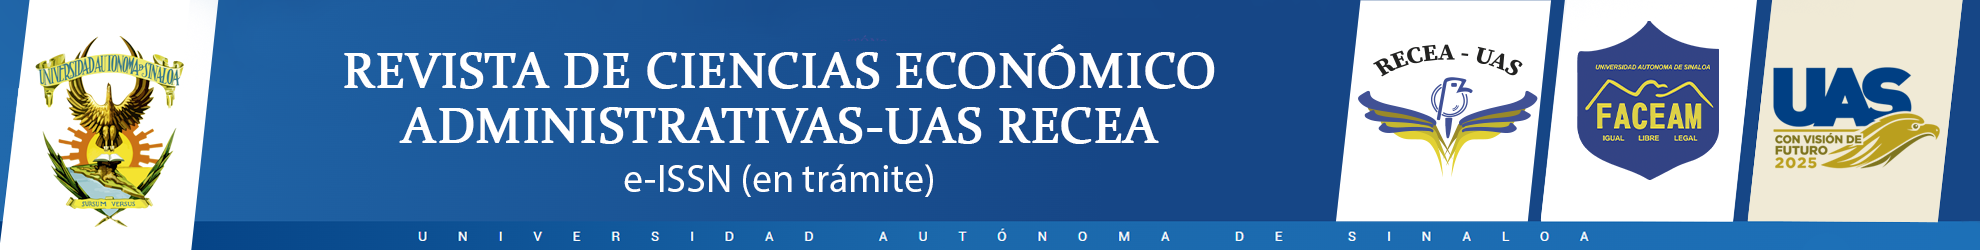 Logo Revista de Ciencias Económico Administrativas - UAS RECEA